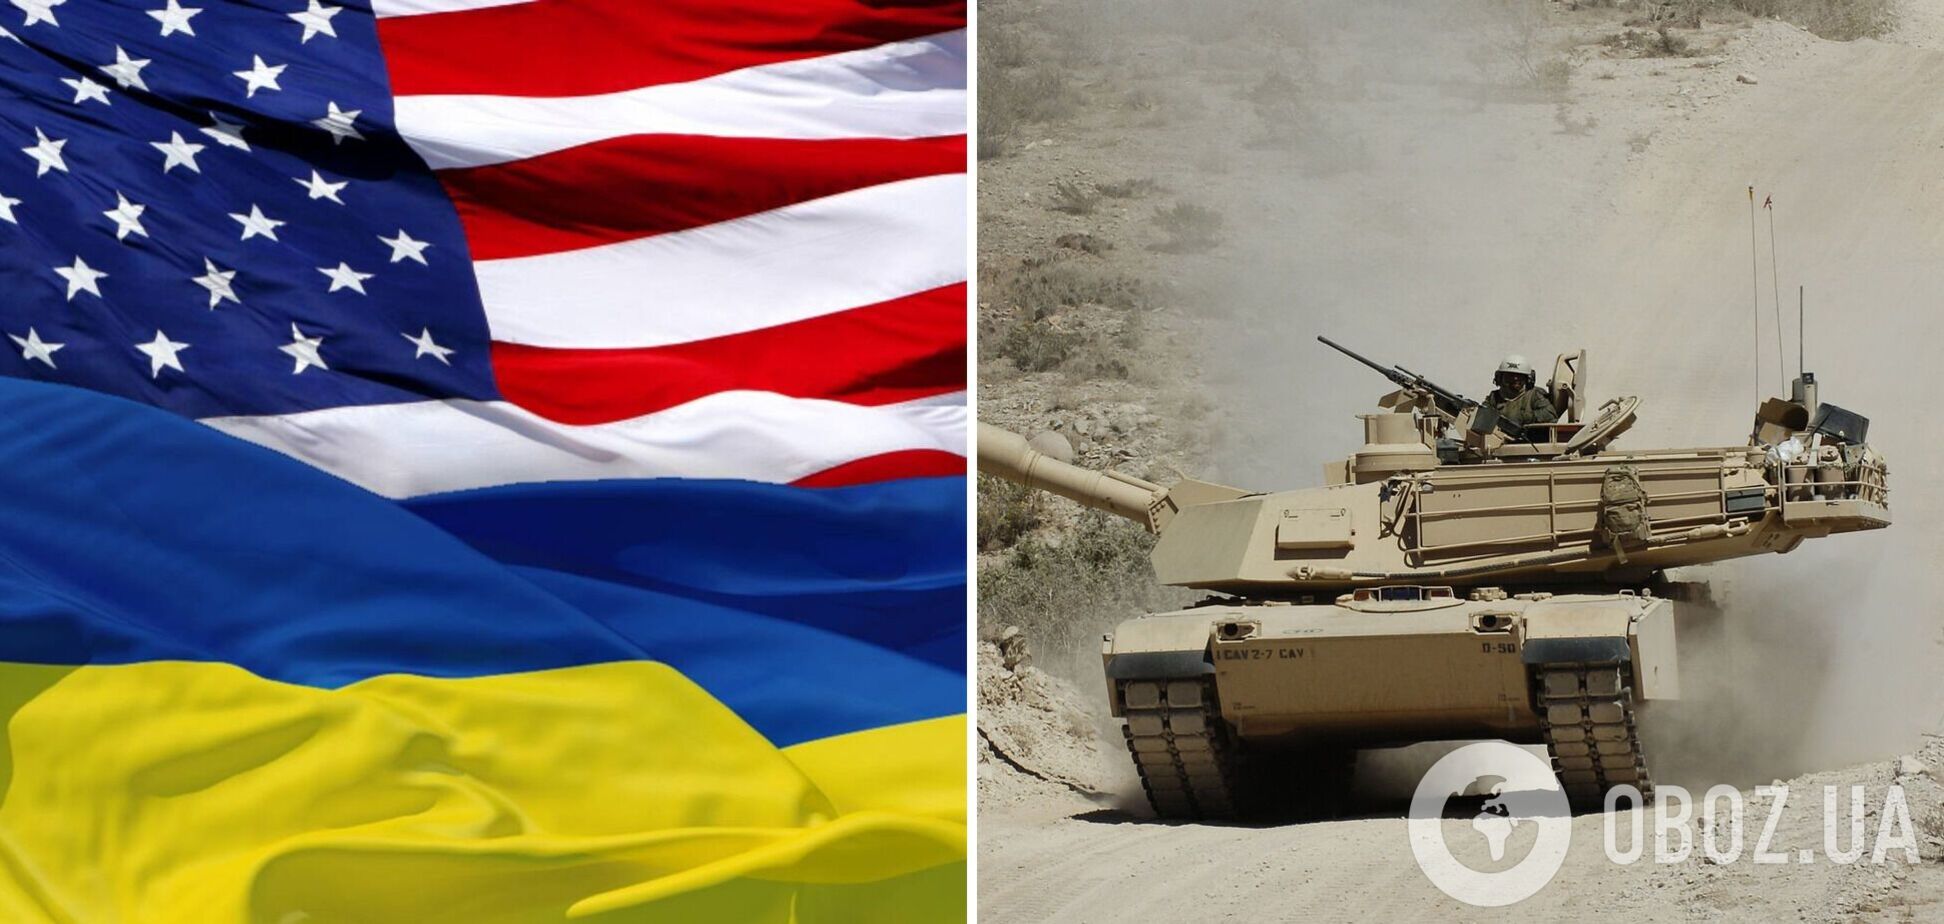 Пентагон заключил контракт на $27,1 млн на изготовление танков Abrams, которые будут переданы Украине